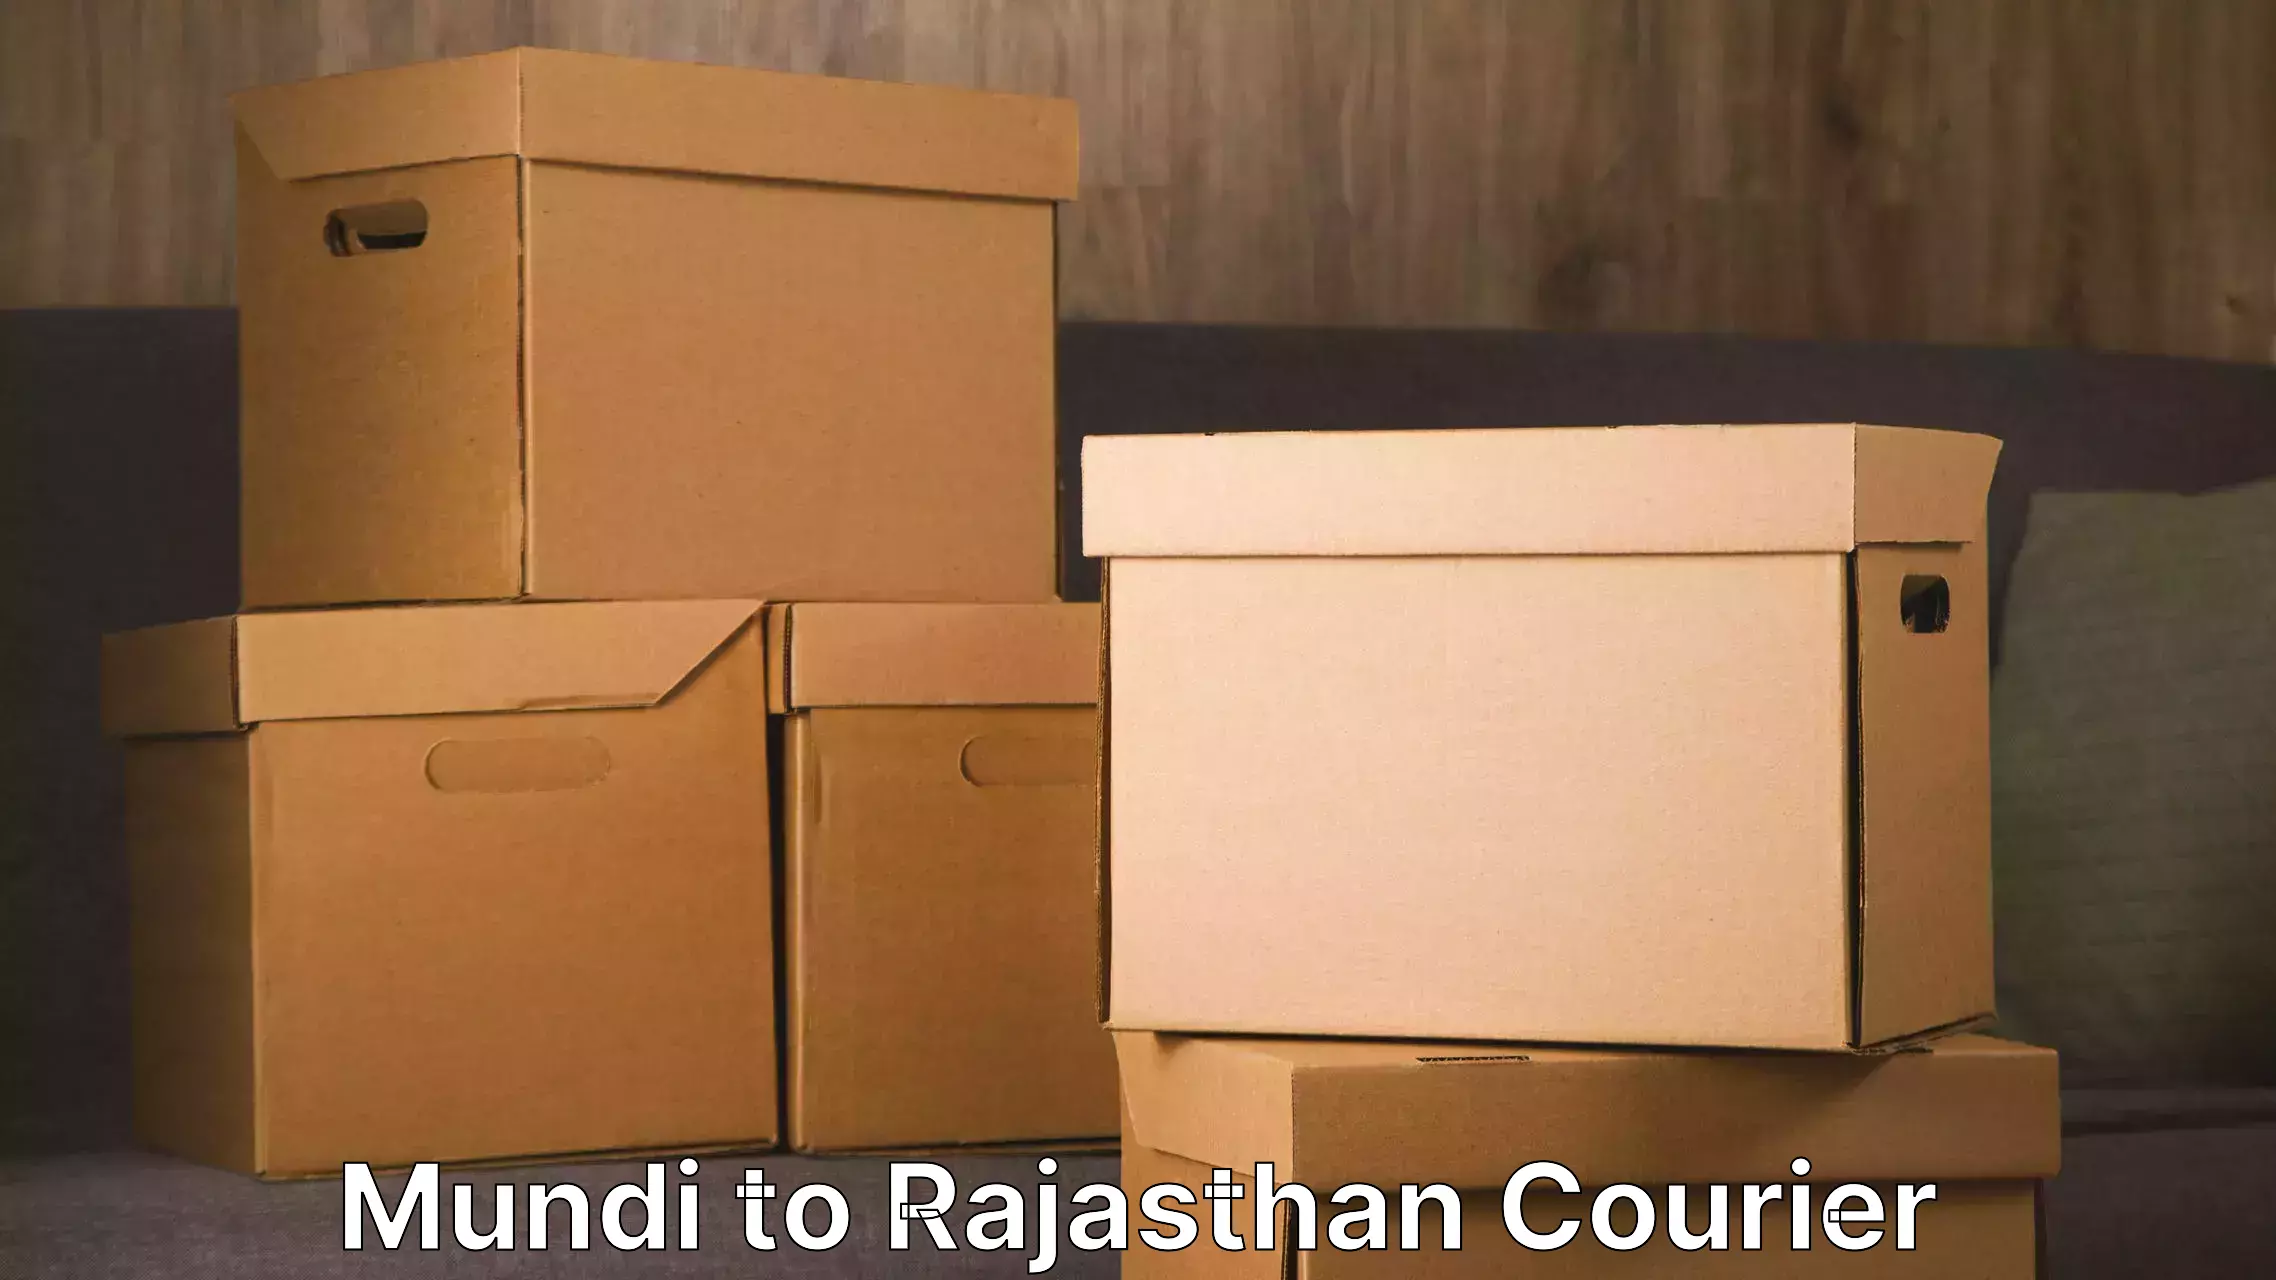 Residential moving experts Mundi to Rajasthan